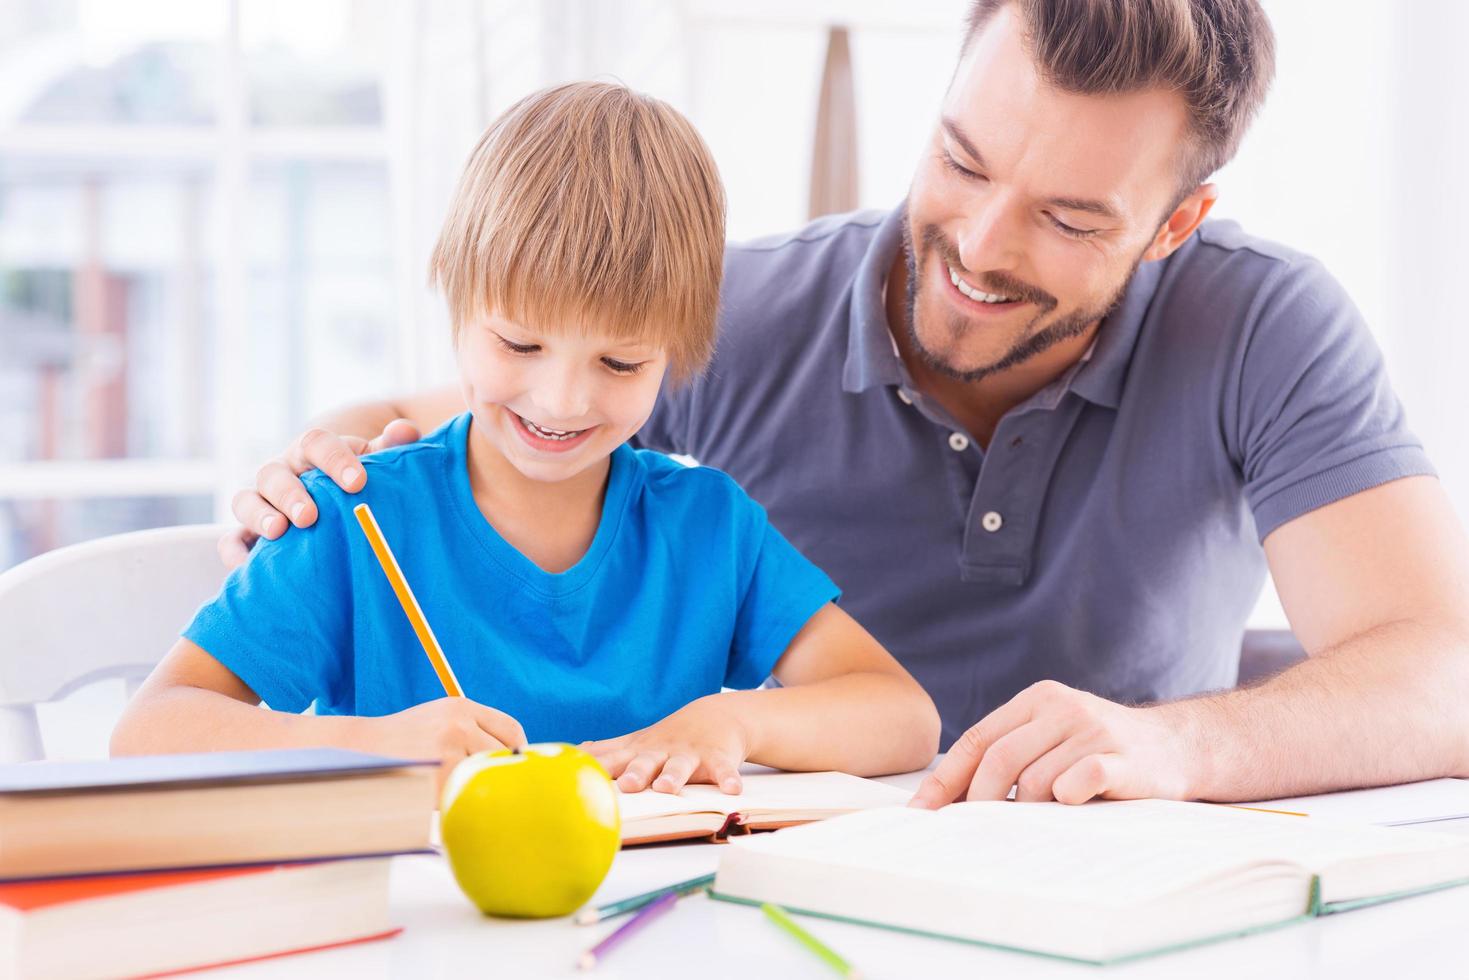 ayudar a hijo con el trabajo escolar. alegre padre joven ayudando a su hijo con la tarea y sonriendo mientras se sientan juntos en la mesa foto